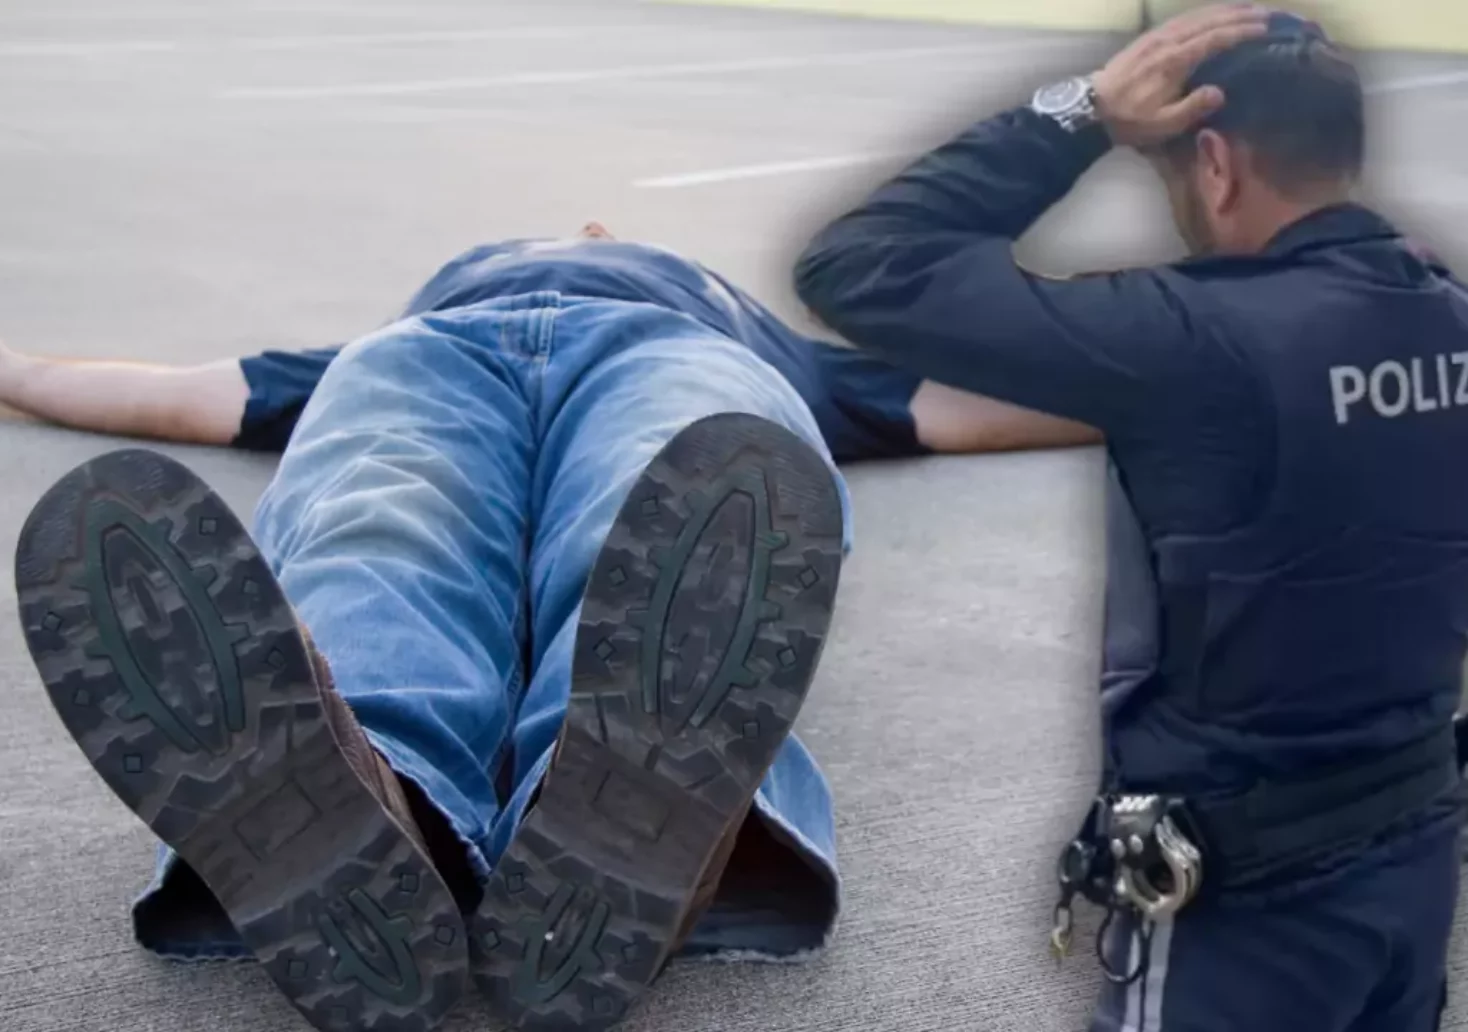 Bild auf 5min.at zeigt einen Mann, der am Boden liegt und einen Polizeibeamten im Vordergrund.